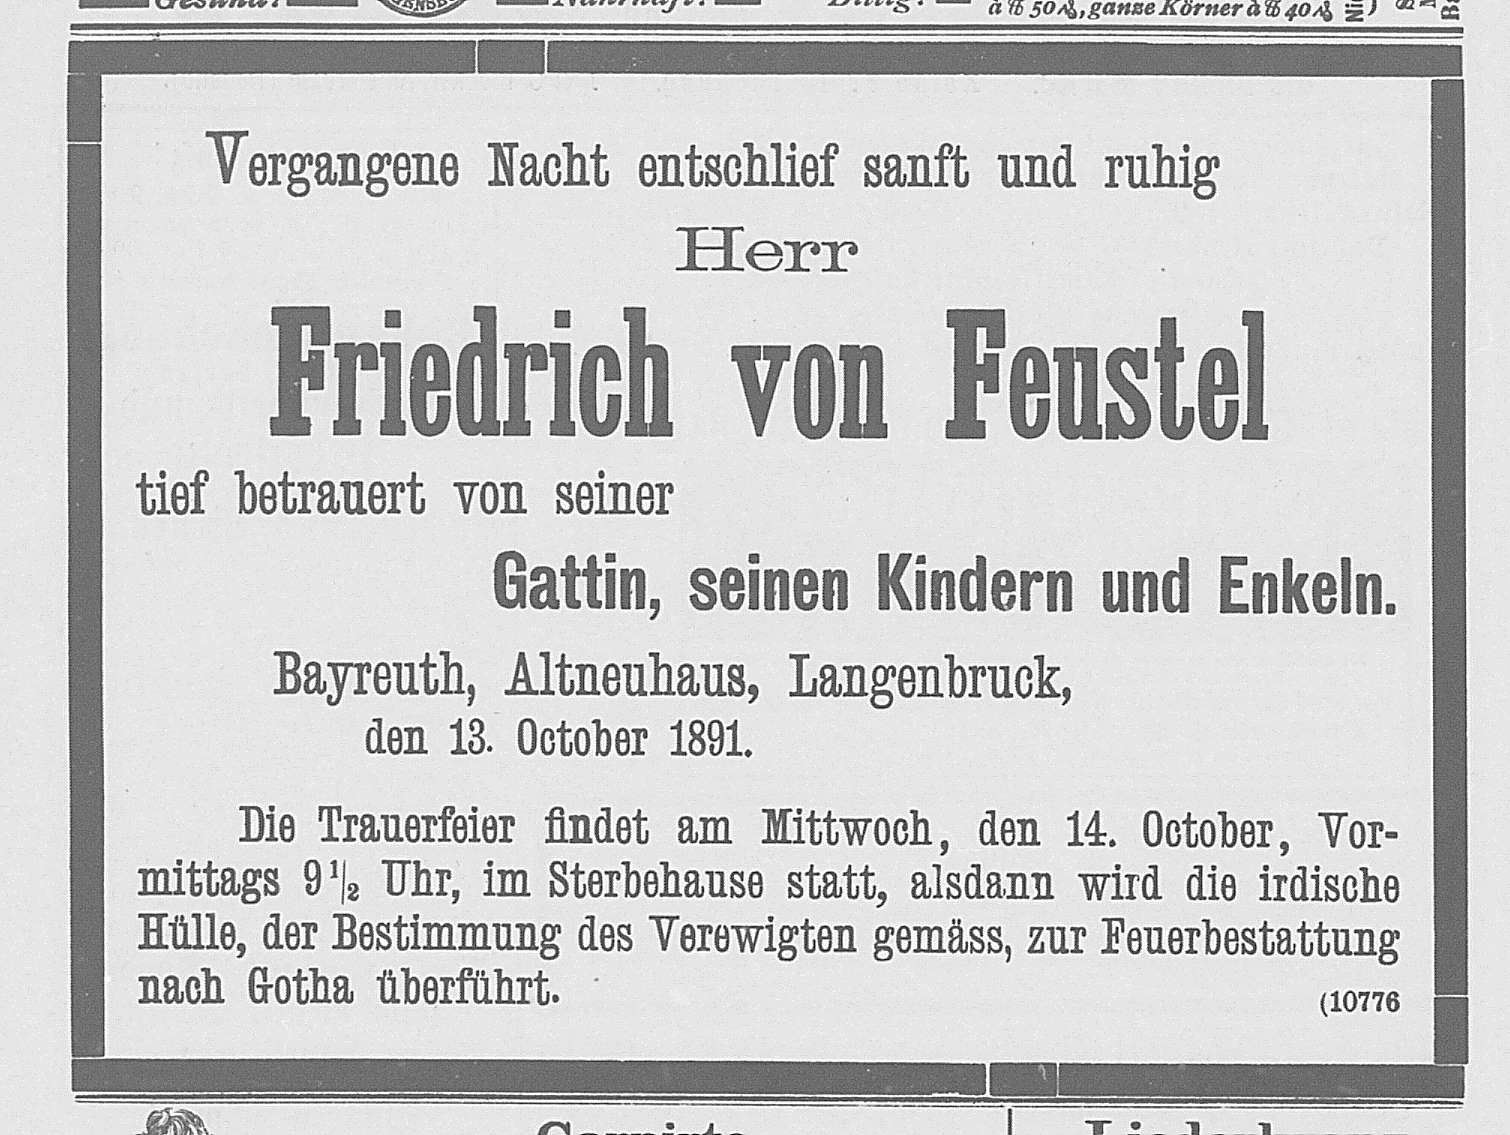 Traueranzeige Friedrich Feustel im Bayreuther Tagblatt 1891